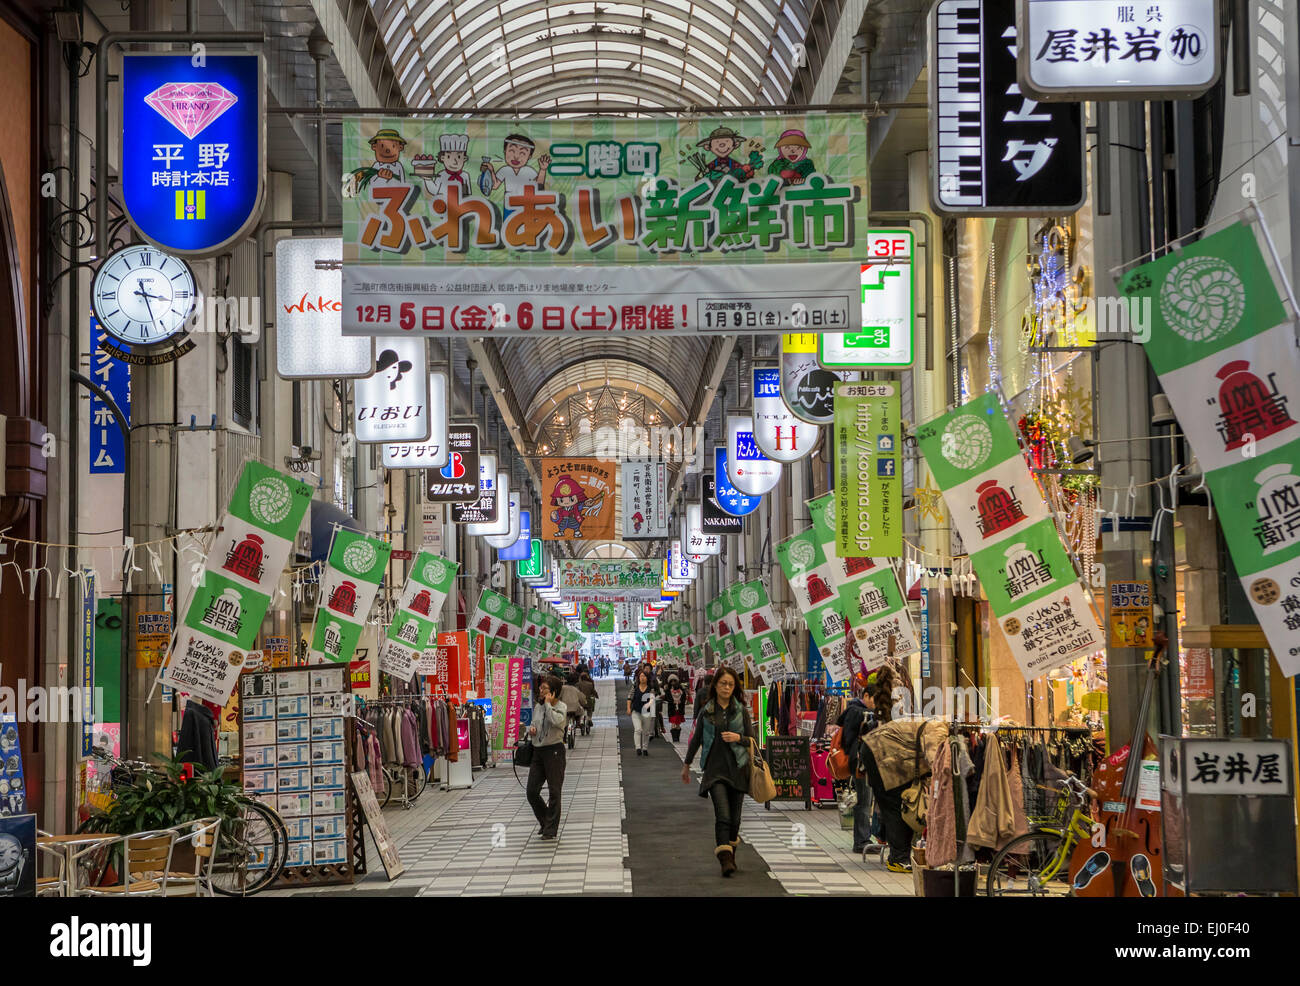 Himeji, Stadt Japan, Asien, bunt, Farben, fallen, Herbst, grün, Lichter, Fußgänger, Einkaufen, Geschäfte, Straße, touristische, trav Stockfoto